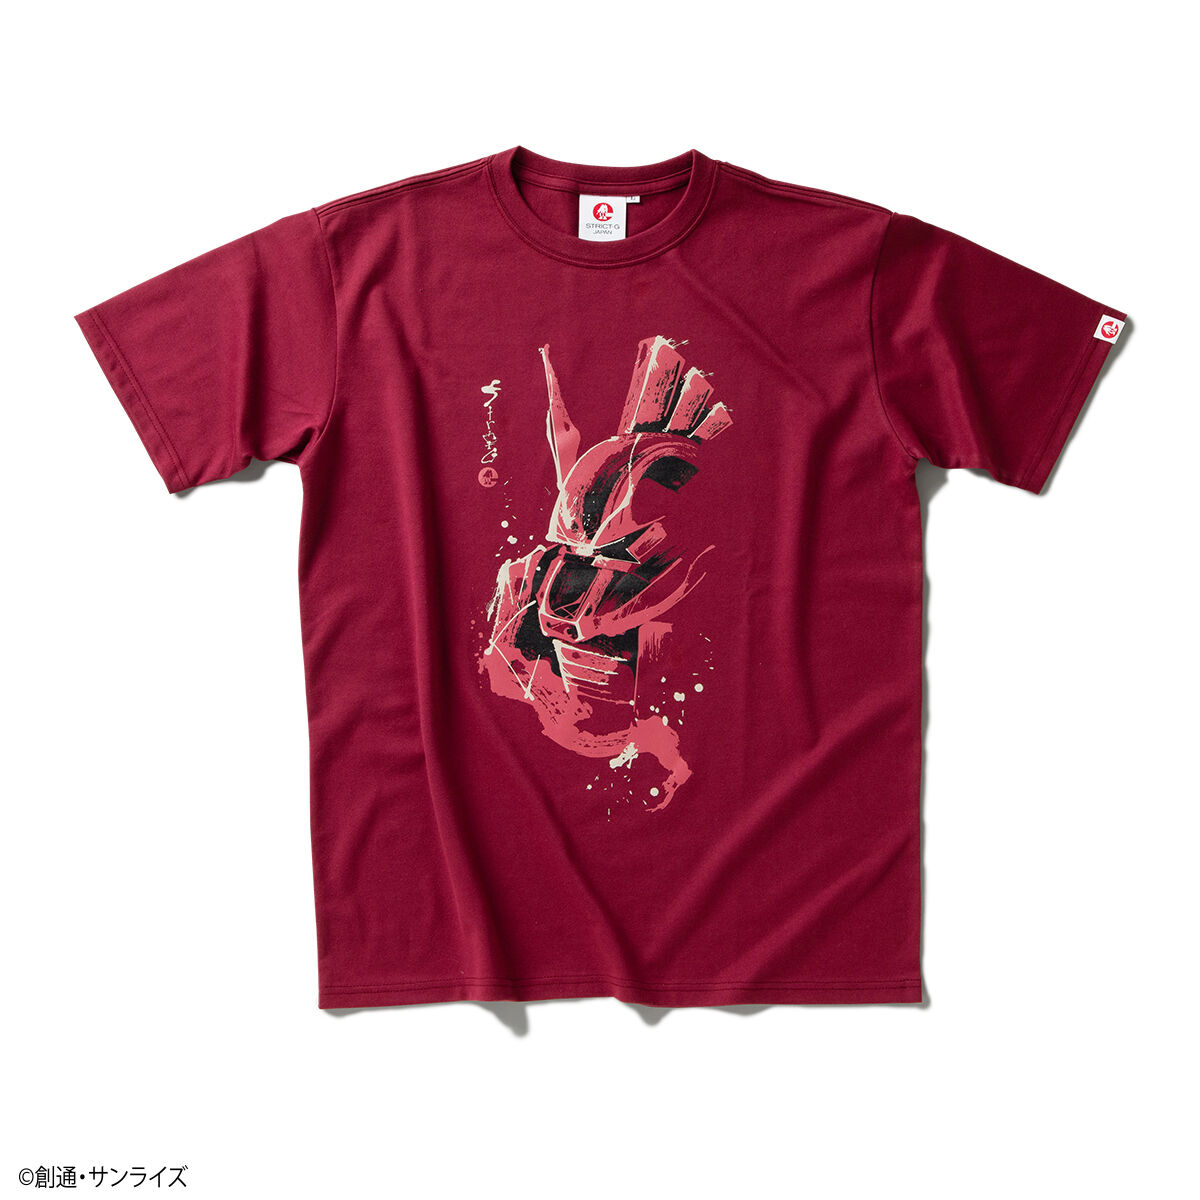 STRICT-G JAPAN『機動戦士ガンダム』筆絵半袖Tシャツ シャア専用